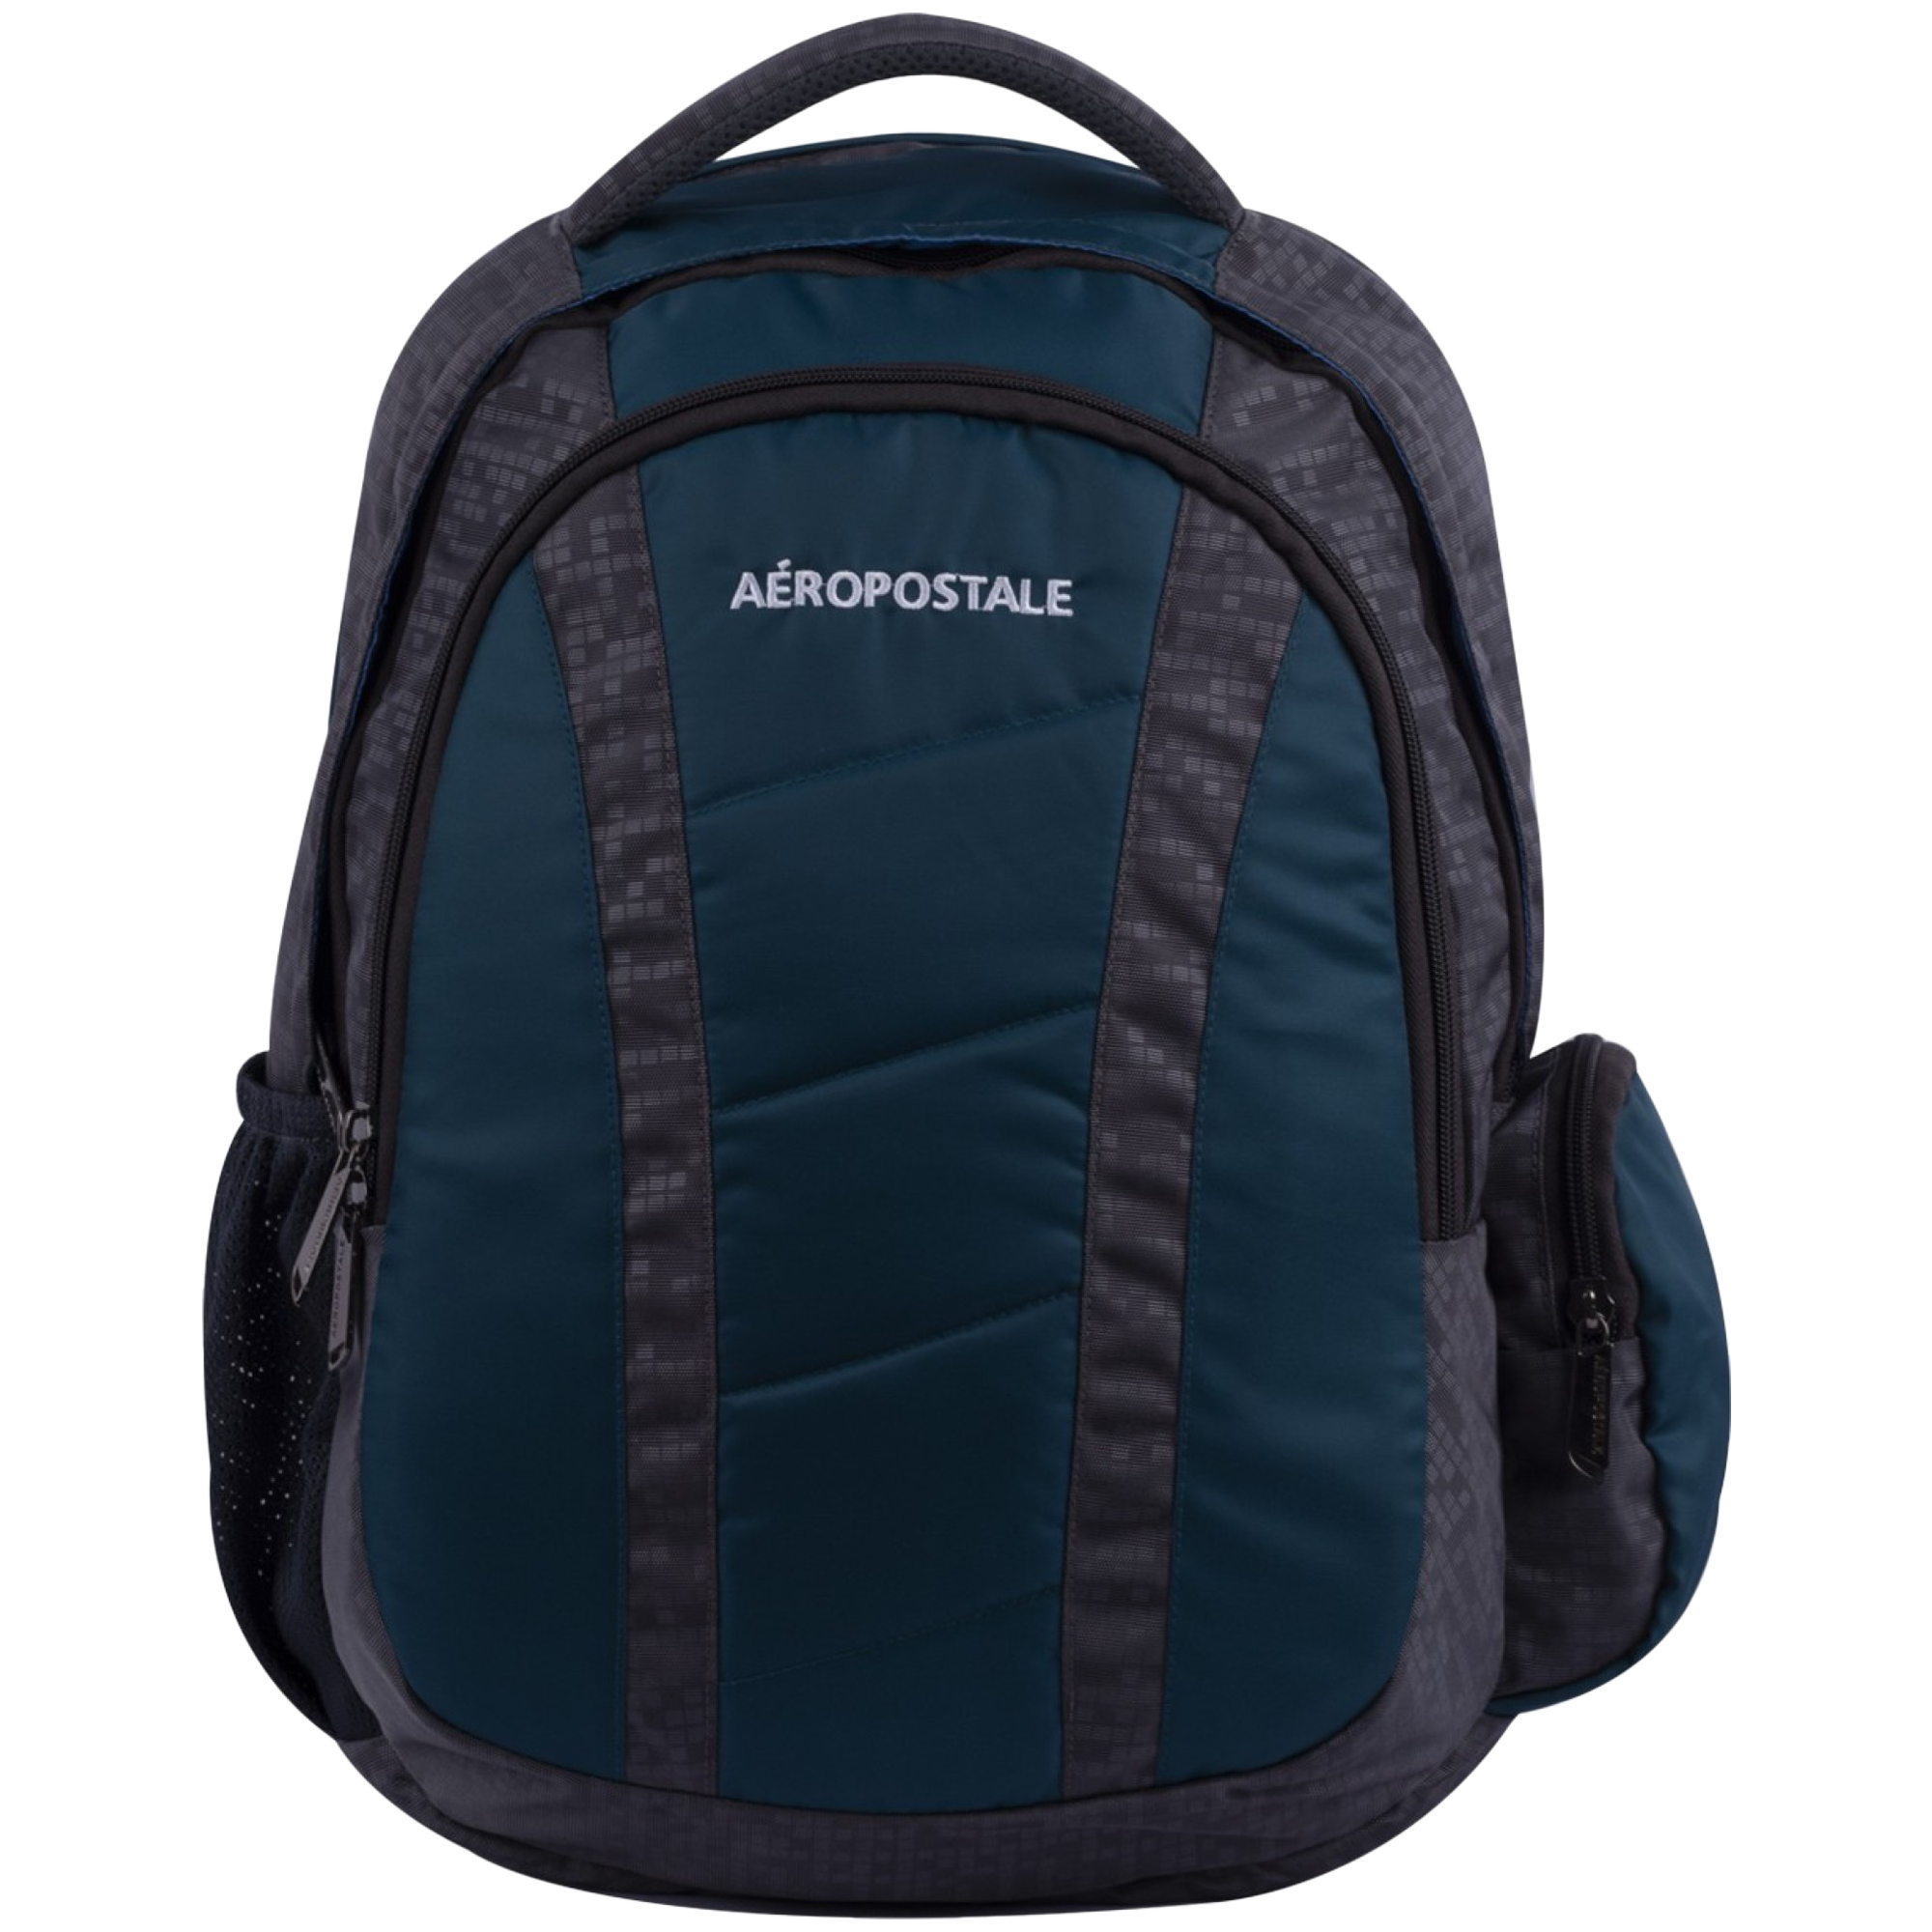 Aeropostale Wanderlust 30 Litres Polyester Backpack (Waterproof, AERO-BP-1008-GRY/T, Grey/Teal Blue)_1